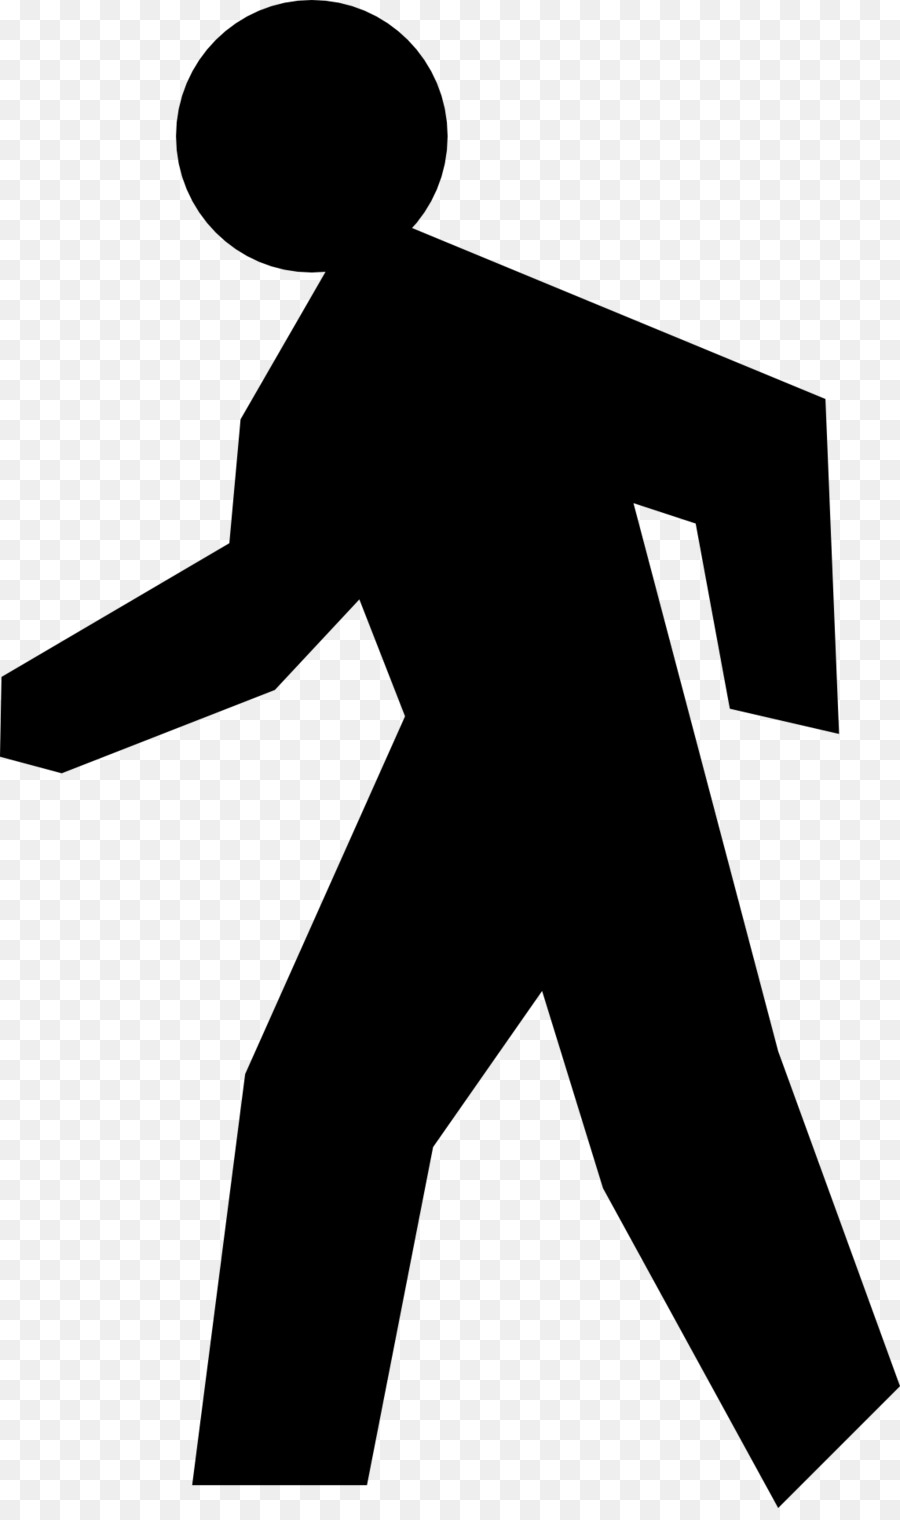 Walking stick Stick figure - running man png download - 1146*1920 - Free Transparent Walking png Download.